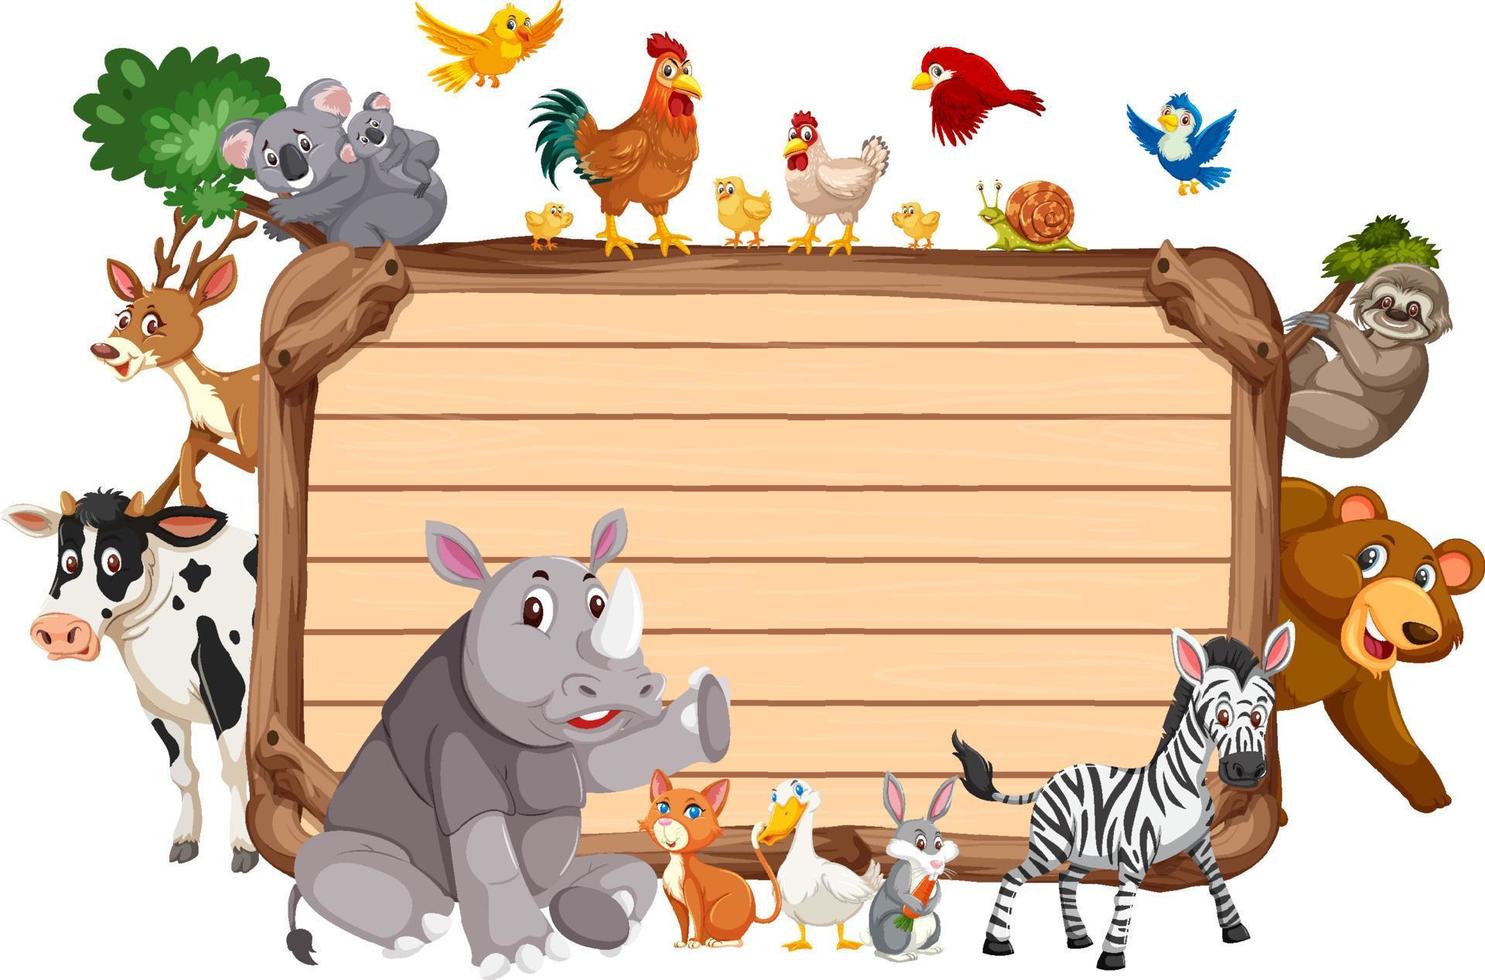 leeg houten bord met verschillende wilde dieren vector